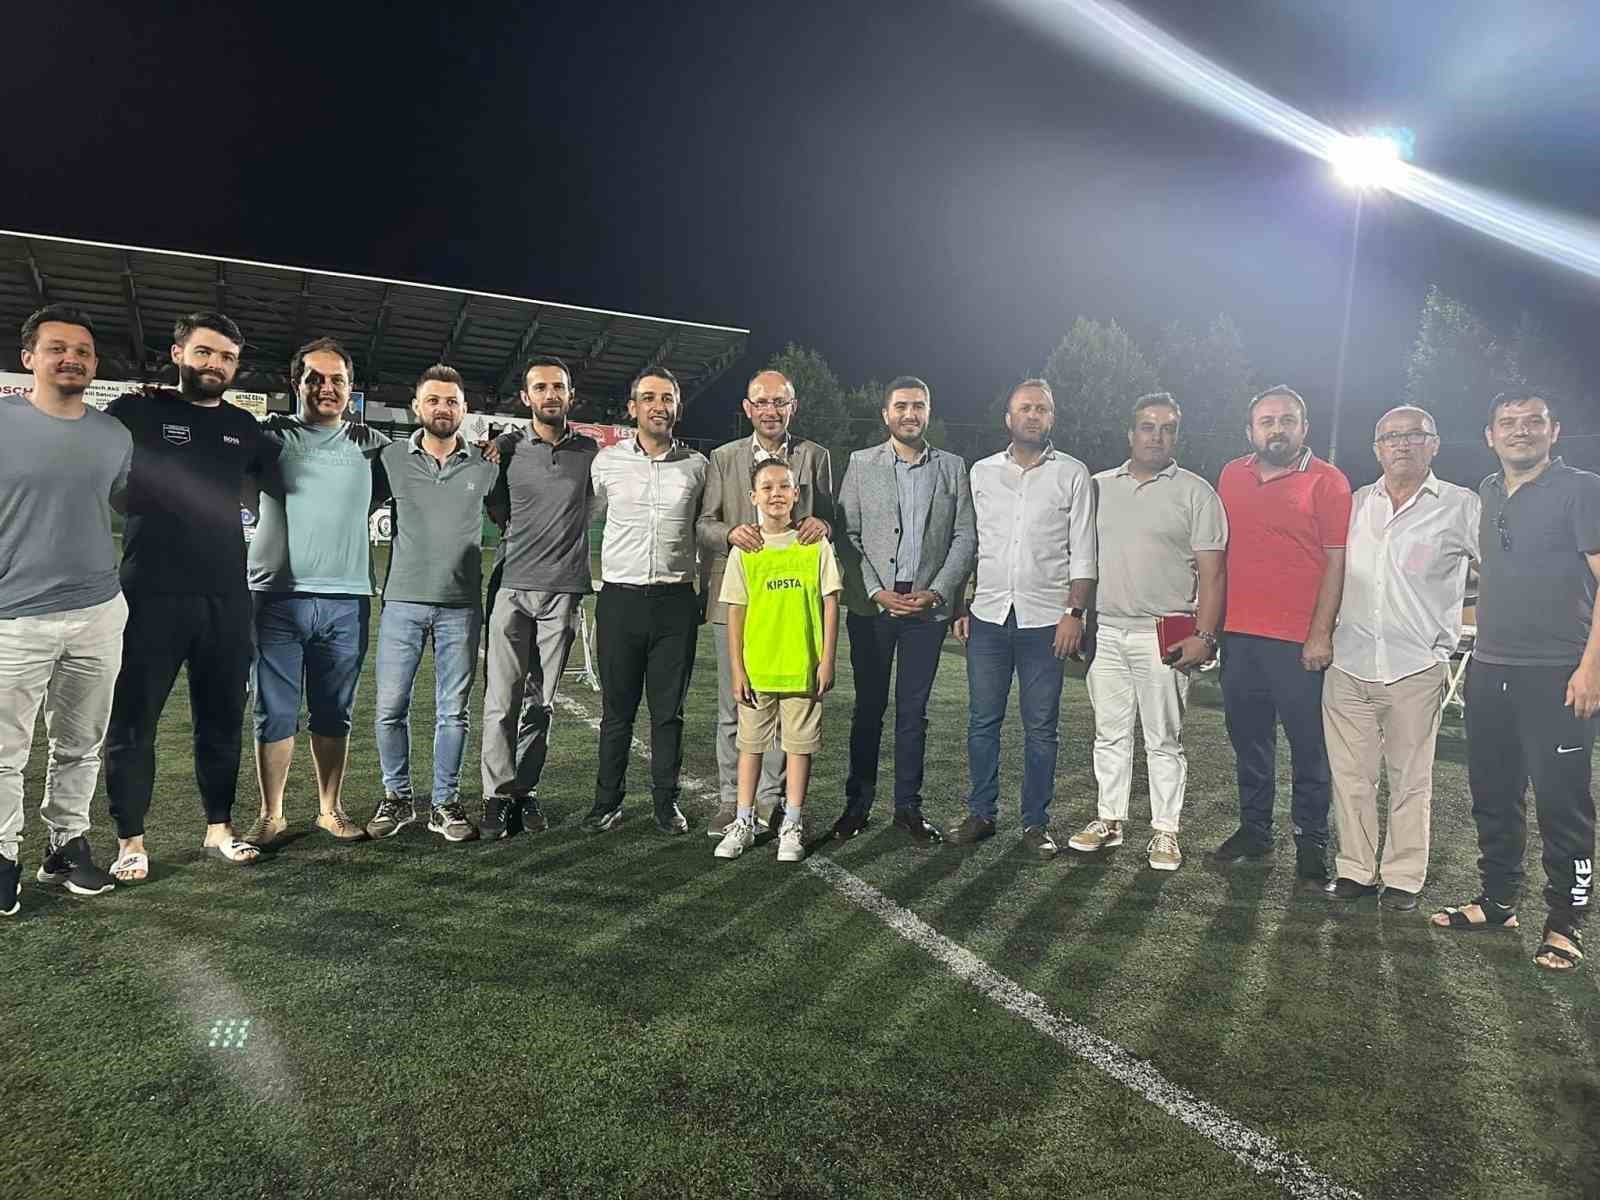 İlkay Gündoğan’ın imzaladığı topla başlayan turnuva şampiyonlar ligi gibi sona erdi